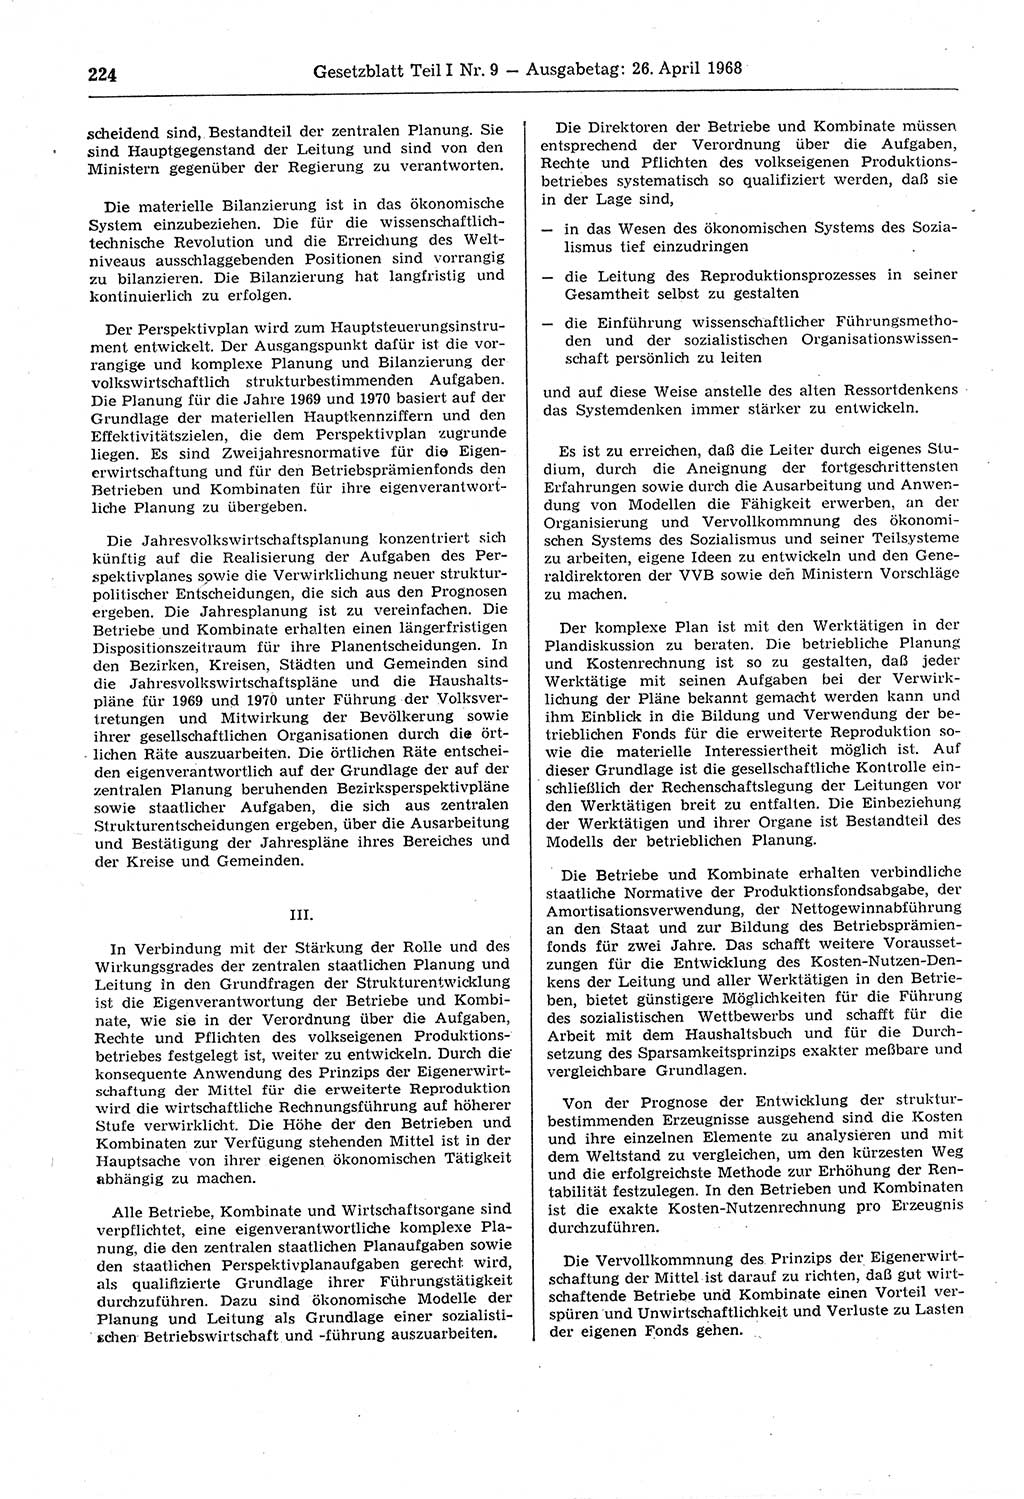 Gesetzblatt (GBl.) der Deutschen Demokratischen Republik (DDR) Teil Ⅰ 1968, Seite 224 (GBl. DDR Ⅰ 1968, S. 224)